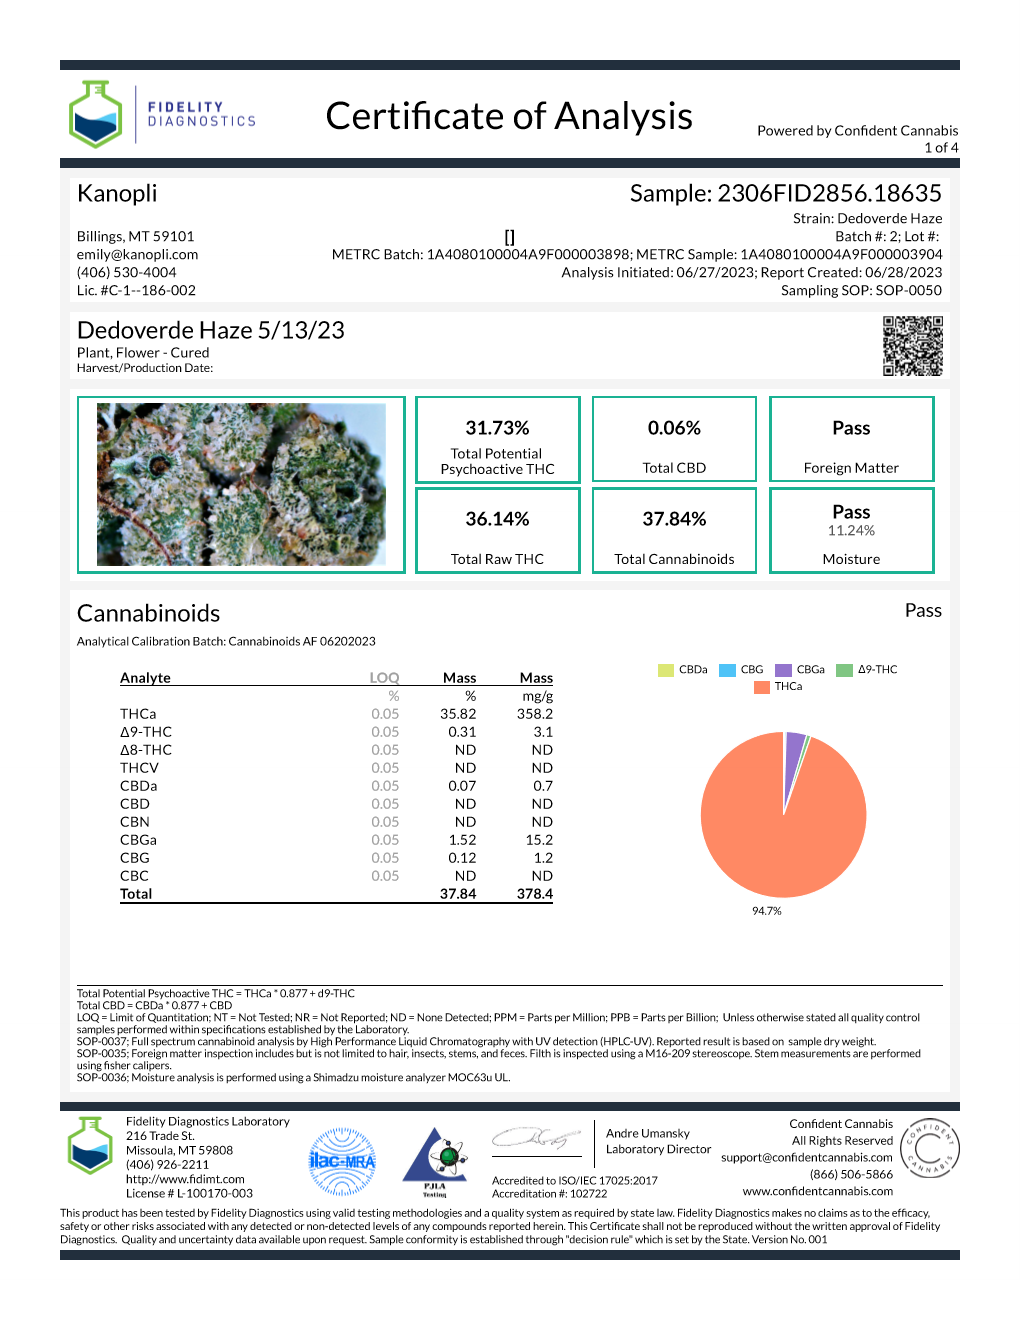 Dedoverde Haze - Hybrid shake (31.73% THC) May 2023 (5 grams)